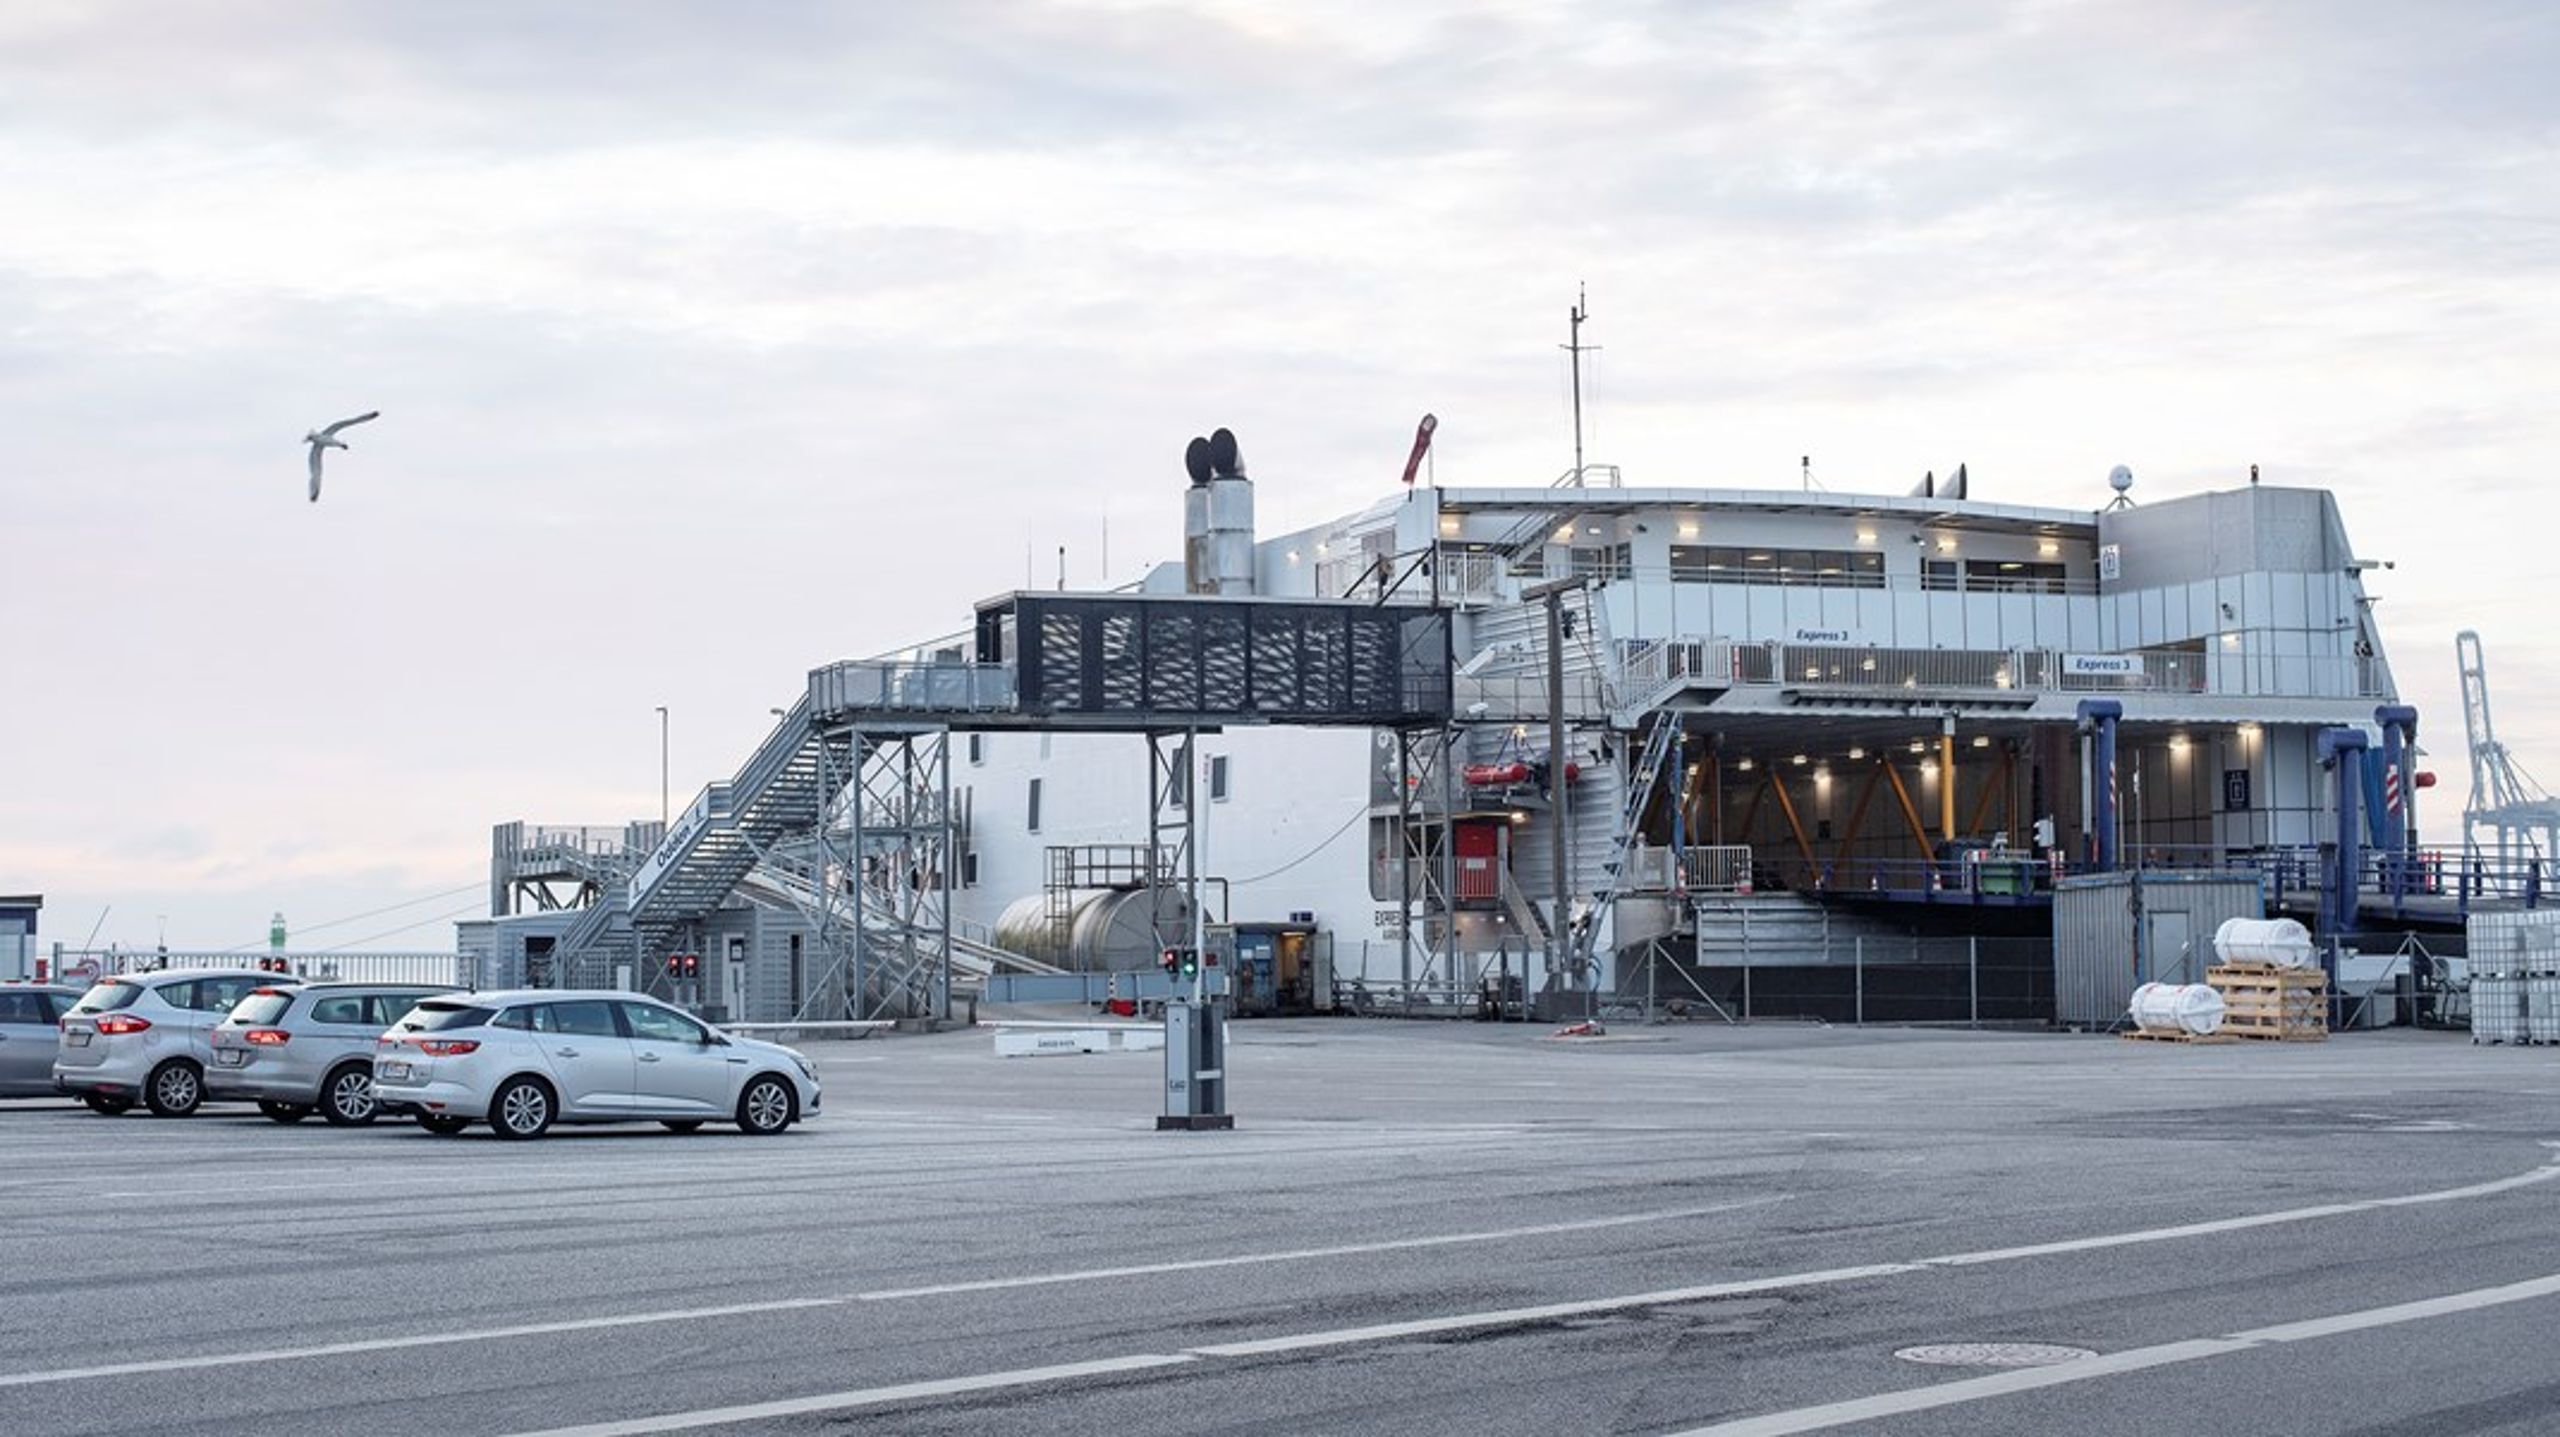 Med en Kattegatforbindelse forventes behovet for indenrigsflyvninger, omvejskørsel og færgeoverfarter at blive reduceret betydeligt, skriver Erhverv Aarhus.